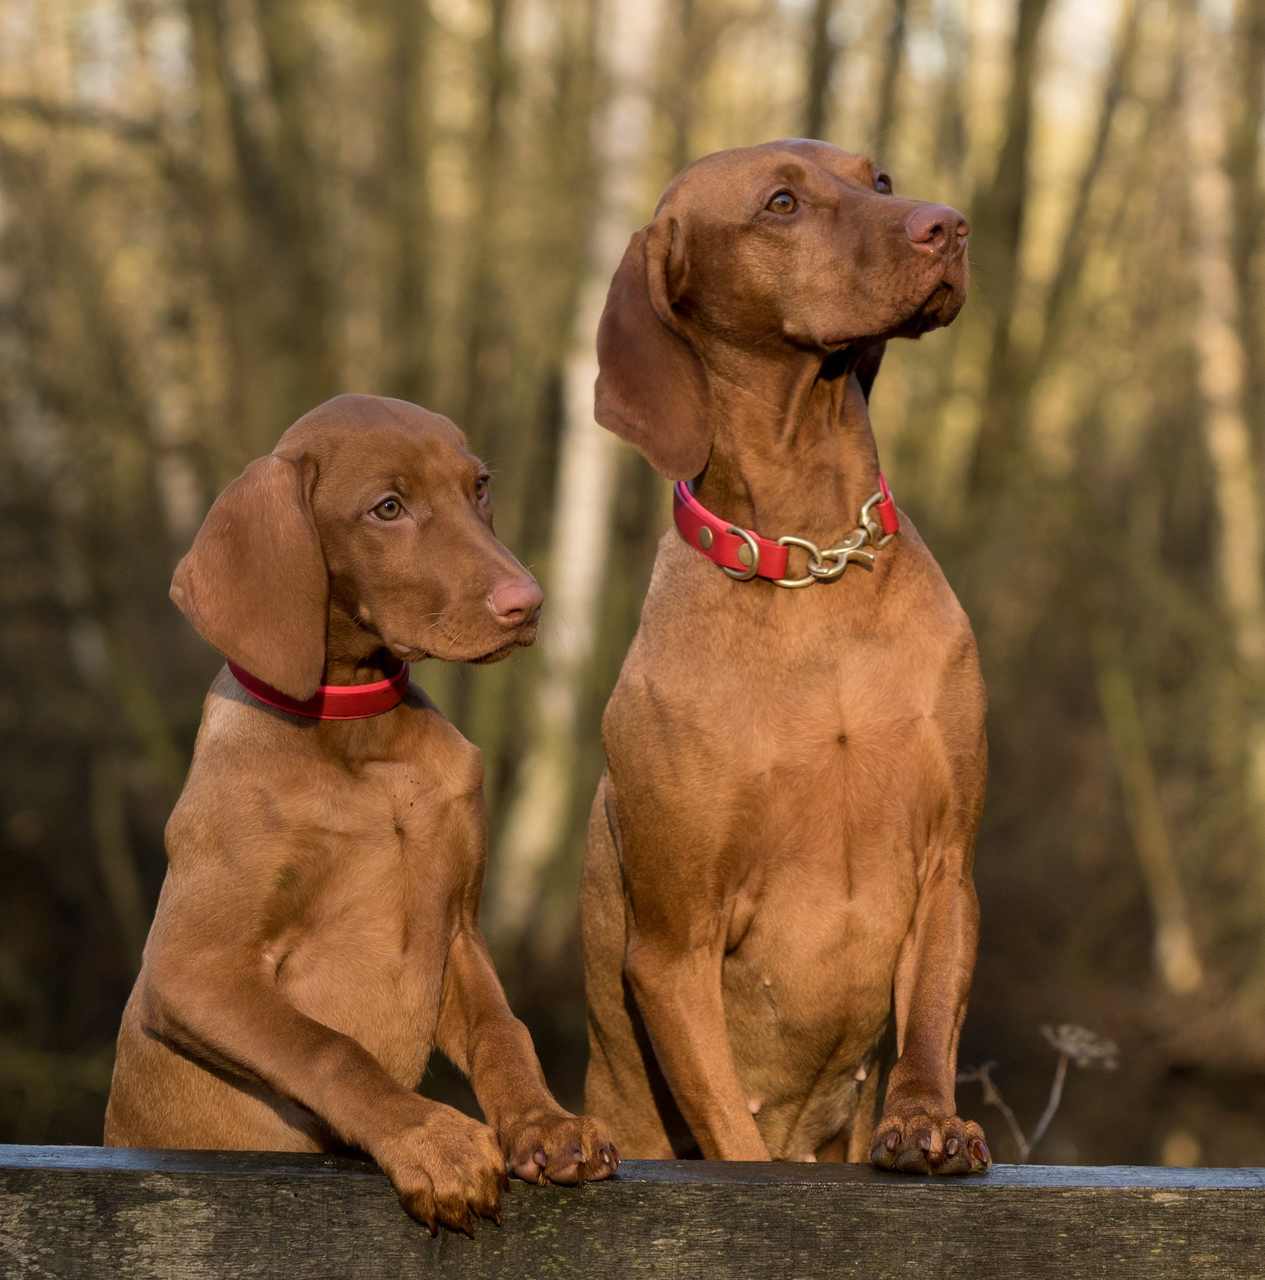 Cachorros fofos: conheça as 3 raças de cachorros mais fofos